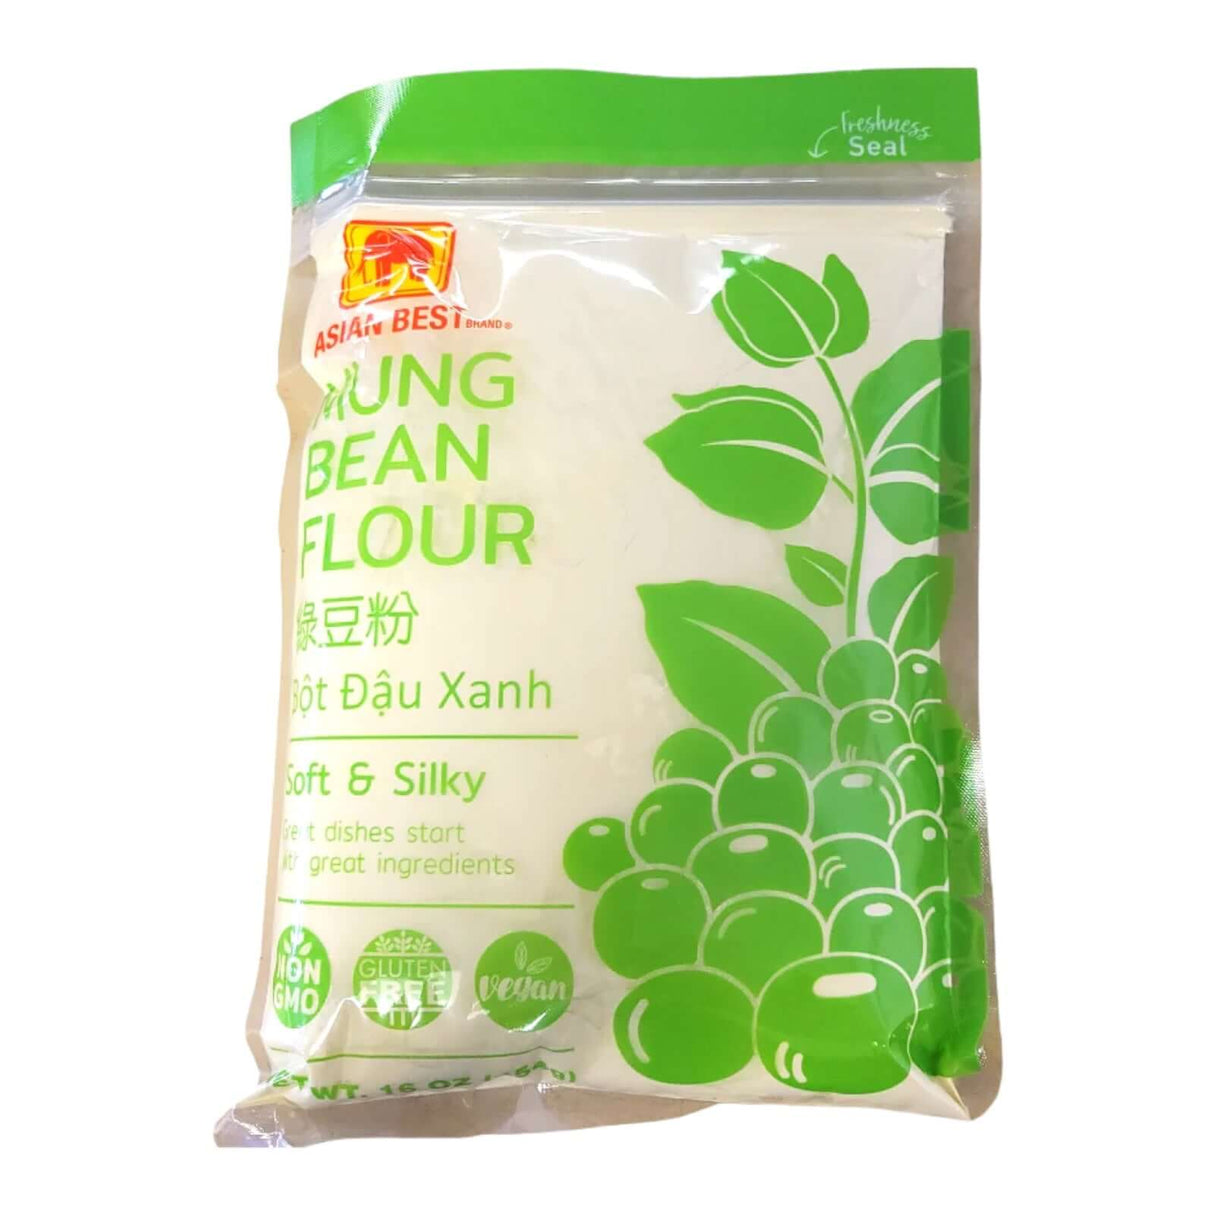 Asian Best Brand Mung Bean Flour